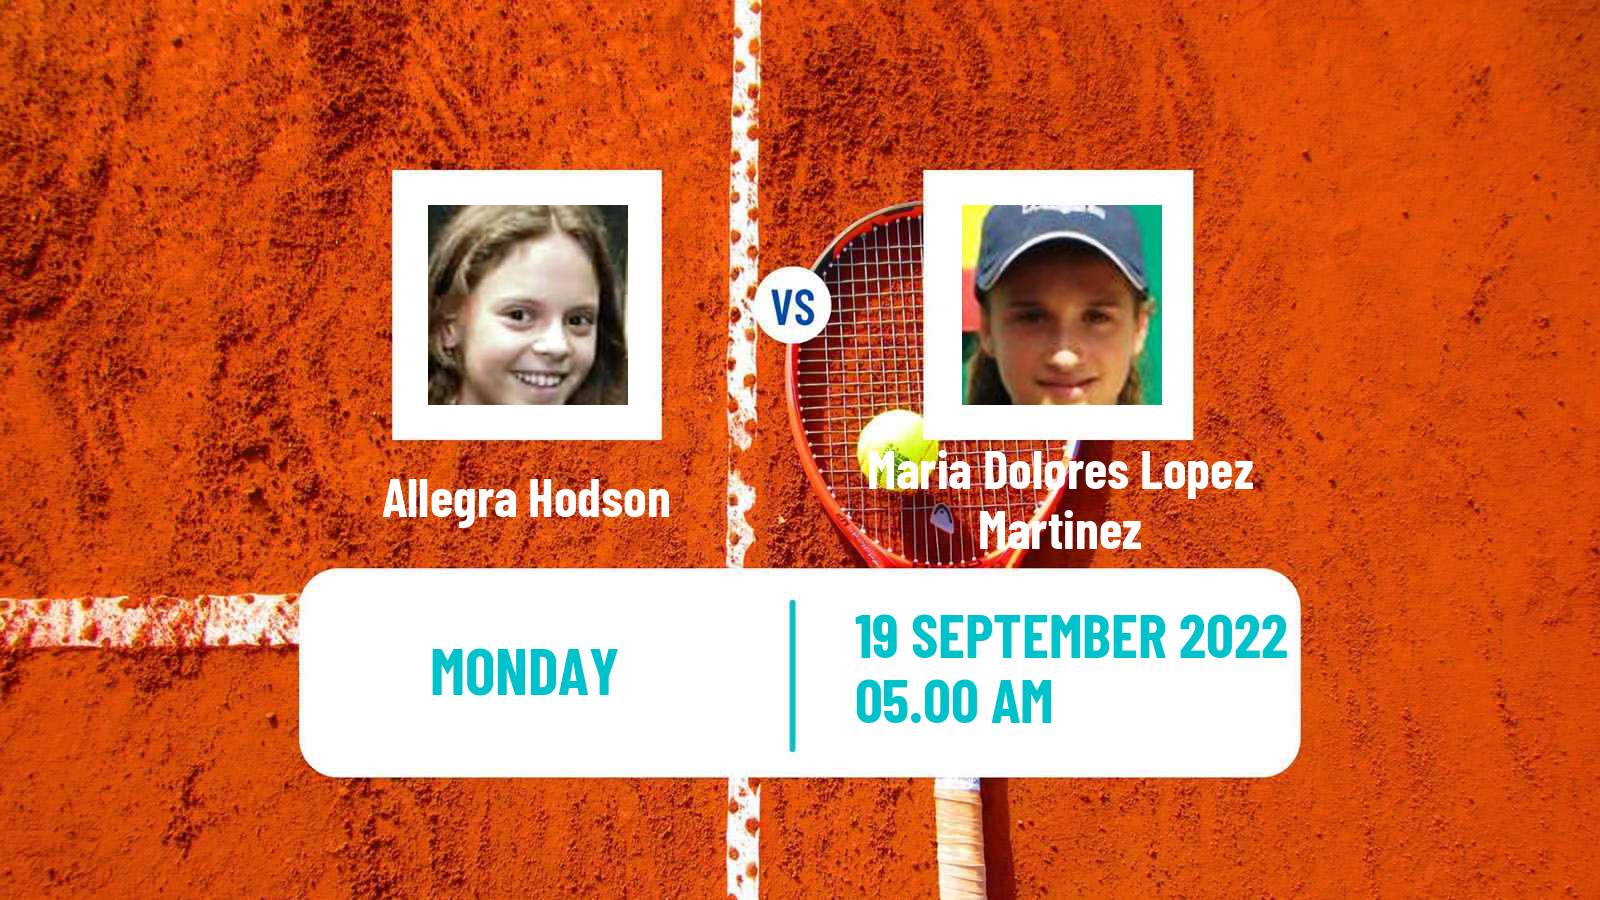 Tennis ITF Tournaments Allegra Hodson - Maria Dolores Lopez Martinez